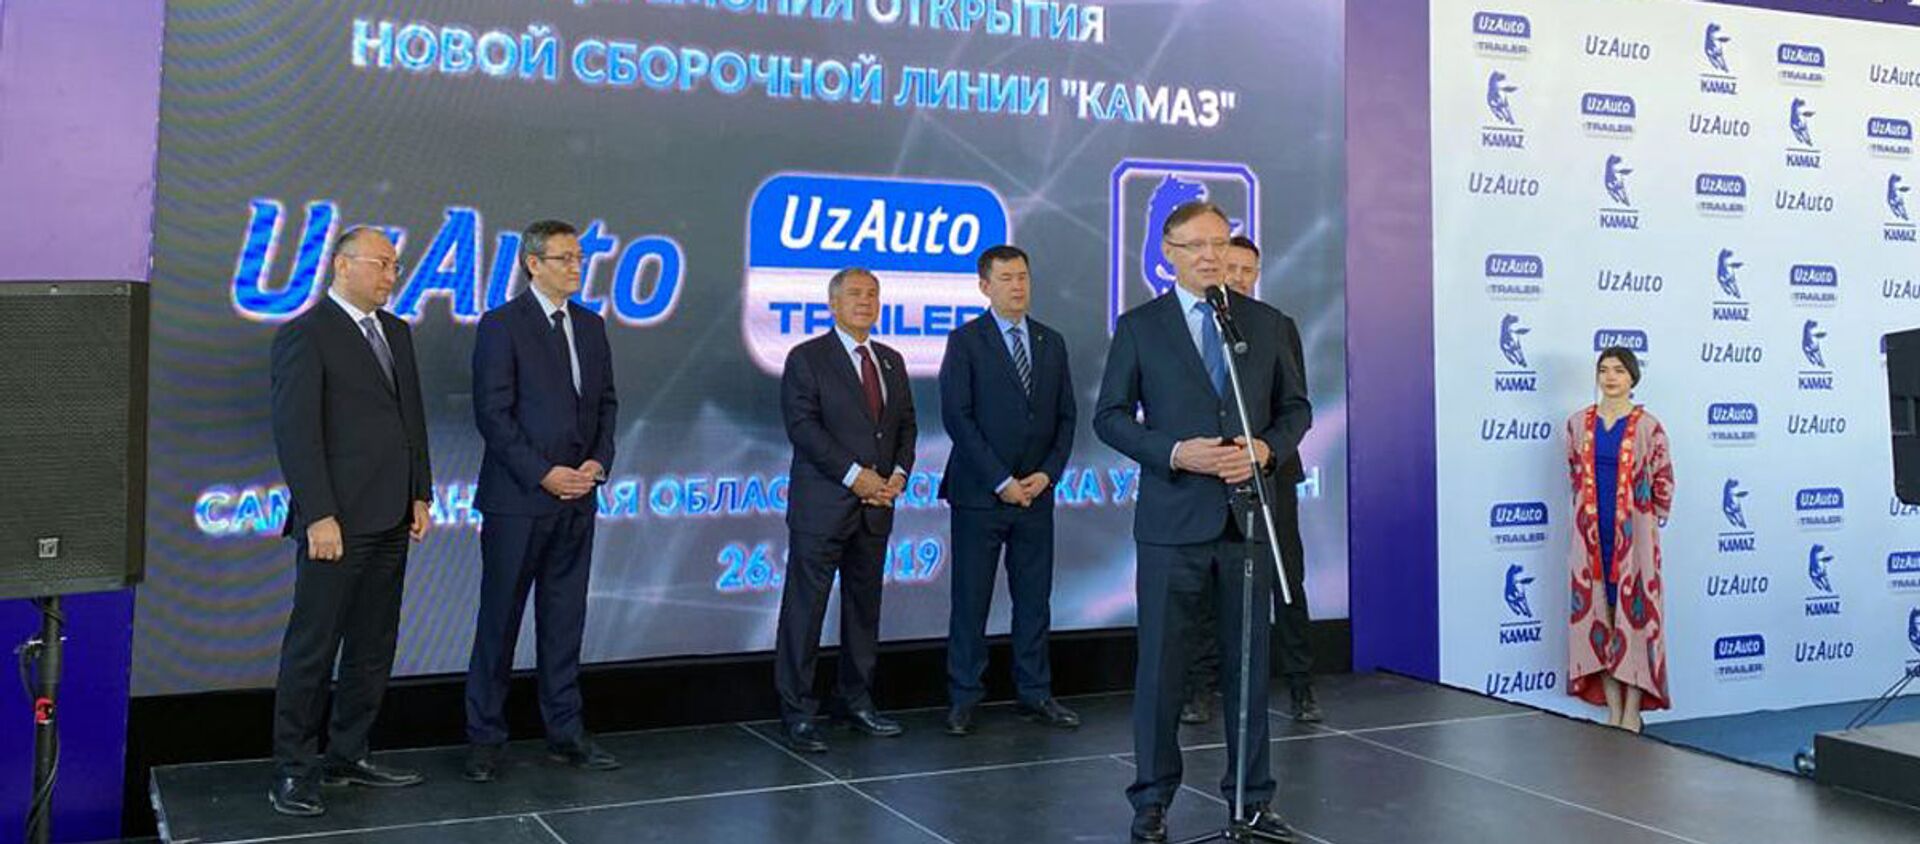 ПАО КАМАЗ совместно с компанией UzAuto TRAILER официально запустили в Самарканде новую линию сборки шасси автомобилей КАМАЗ - Sputnik Узбекистан, 1920, 26.11.2019